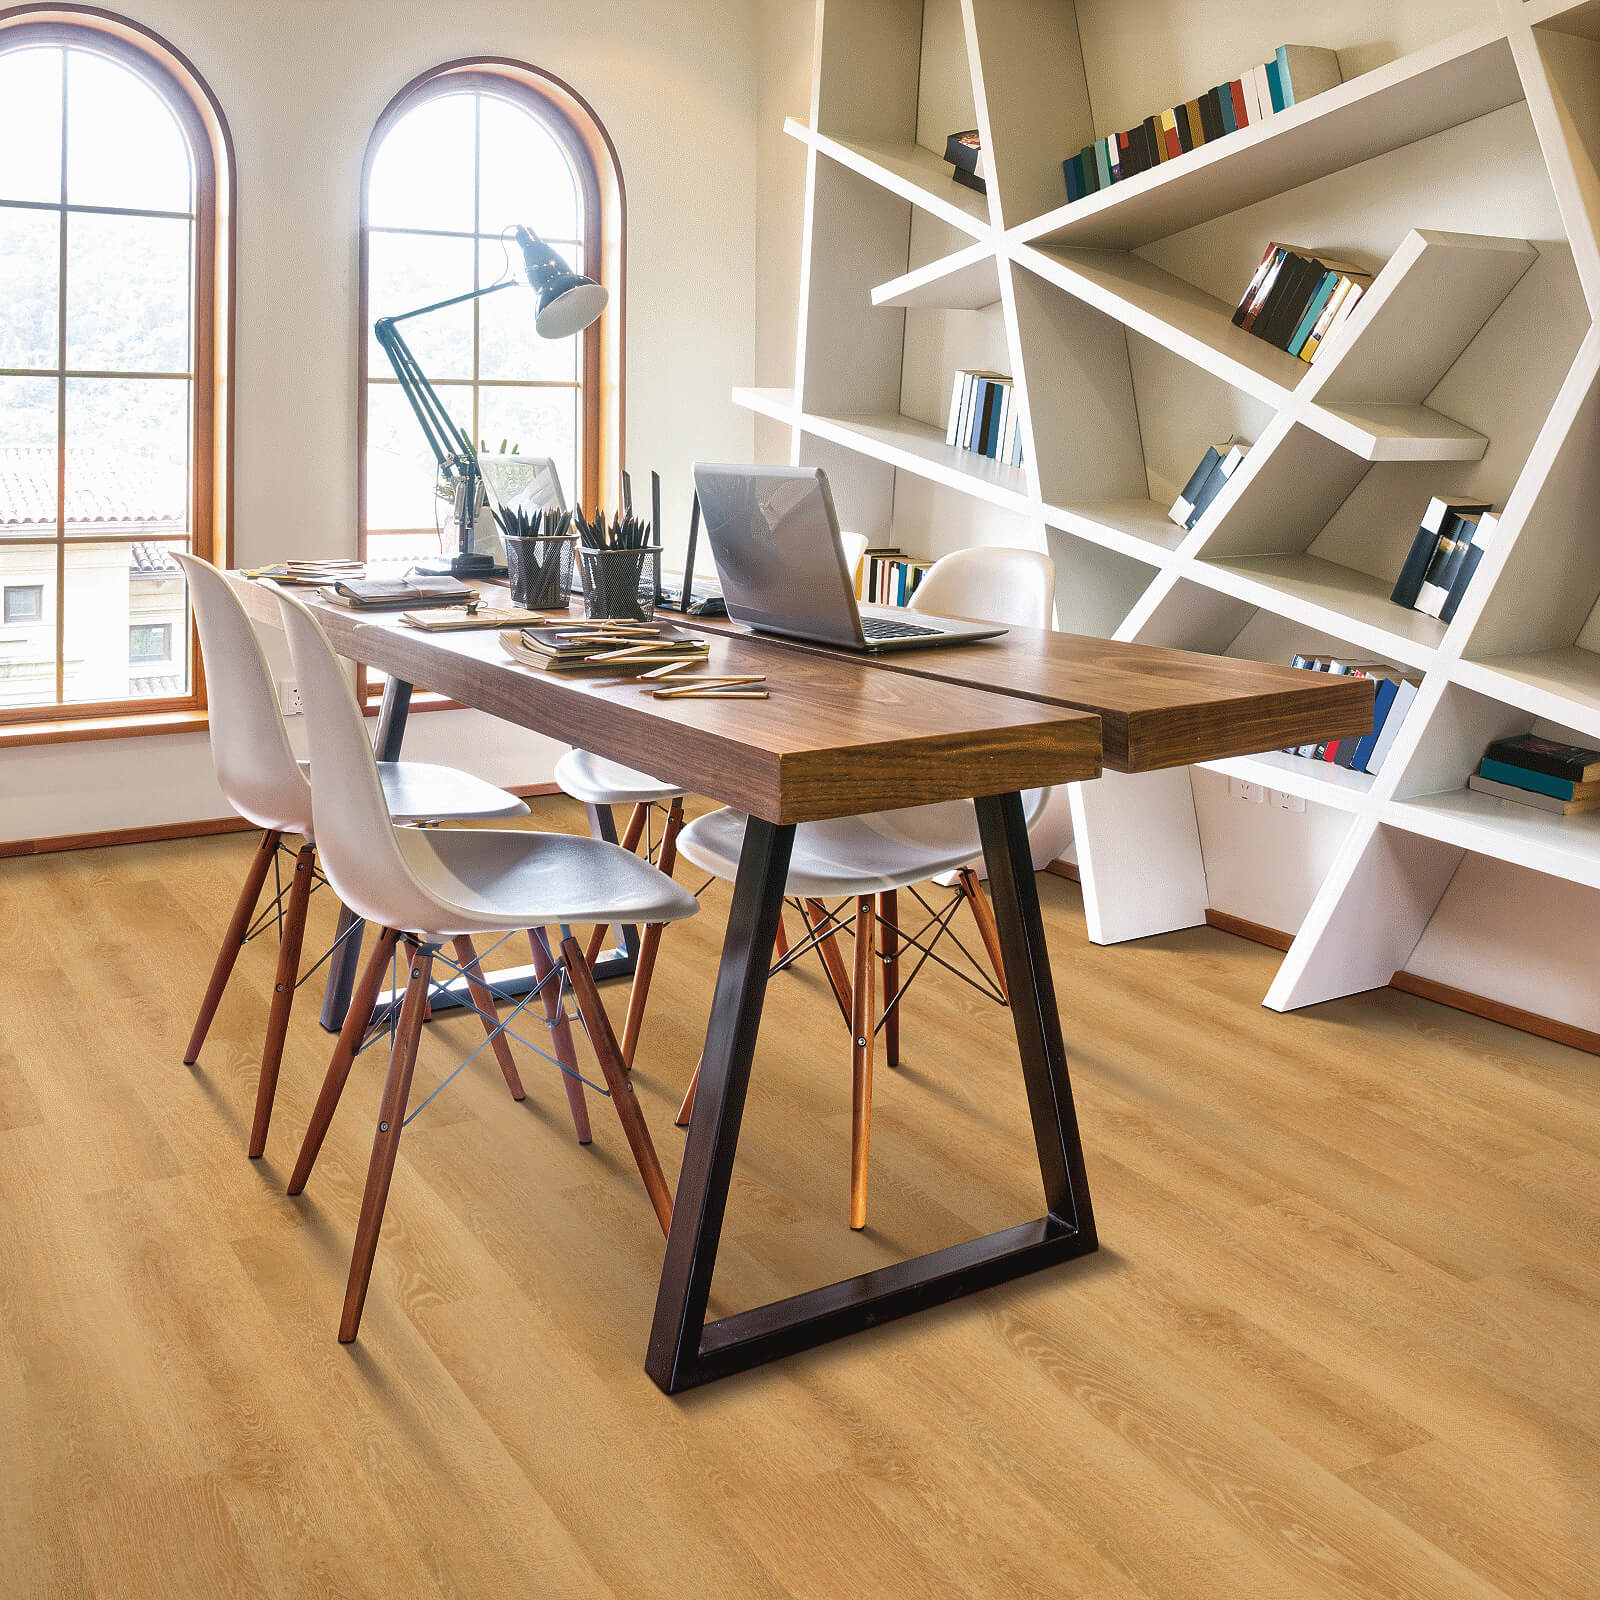 Vinyl flooring for study room | Carpetland USA of VA